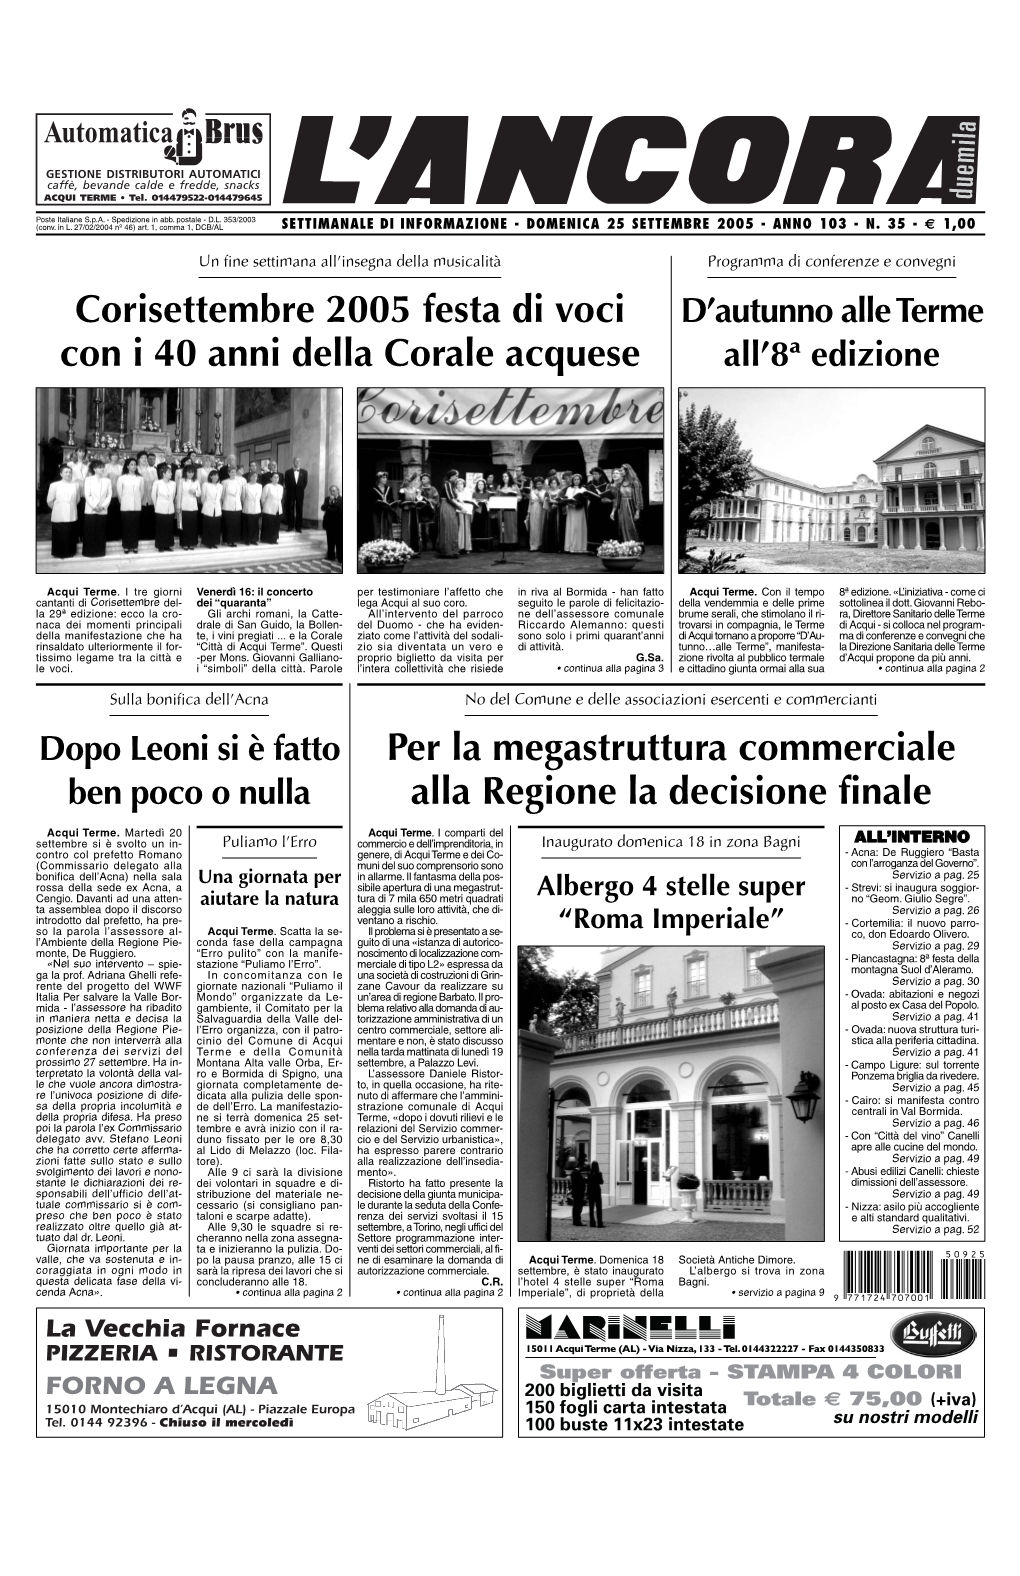 Corisettembre 2005 Festa Di Voci Con I 40 Anni Della Corale Acquese Per